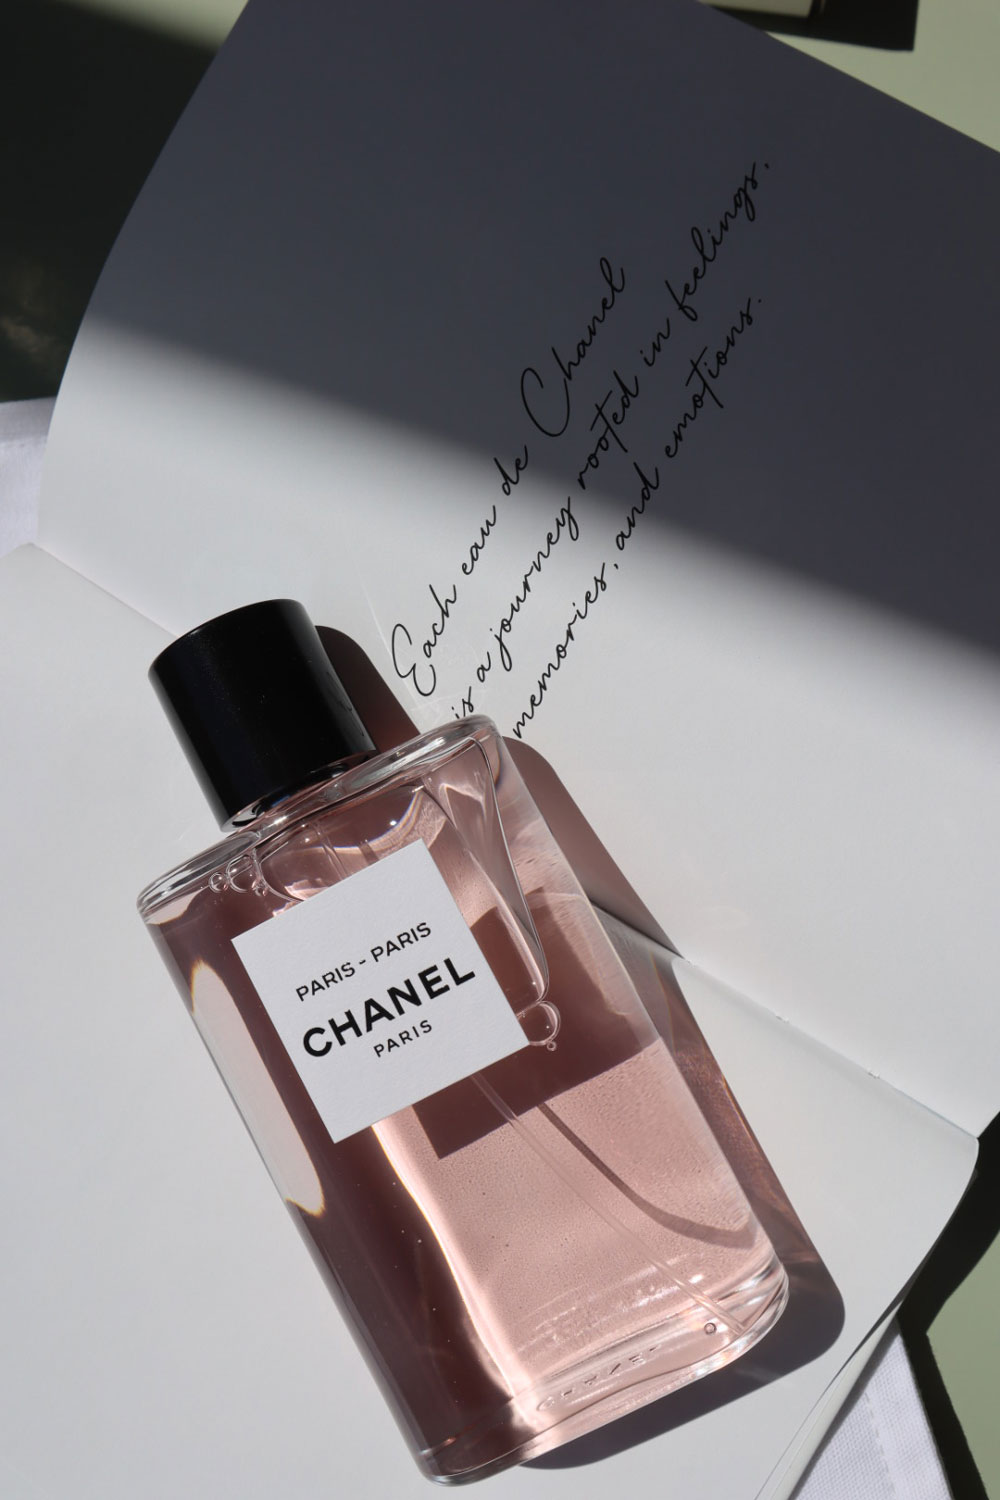 Mit Paris-Paris erhält die legendäre Duft-Kollektion Les Eaux de Chanel Zuwachs um einen wunderbaren Unisex-Duft, der zum Träumen von der Hauptstadt einlädt. 